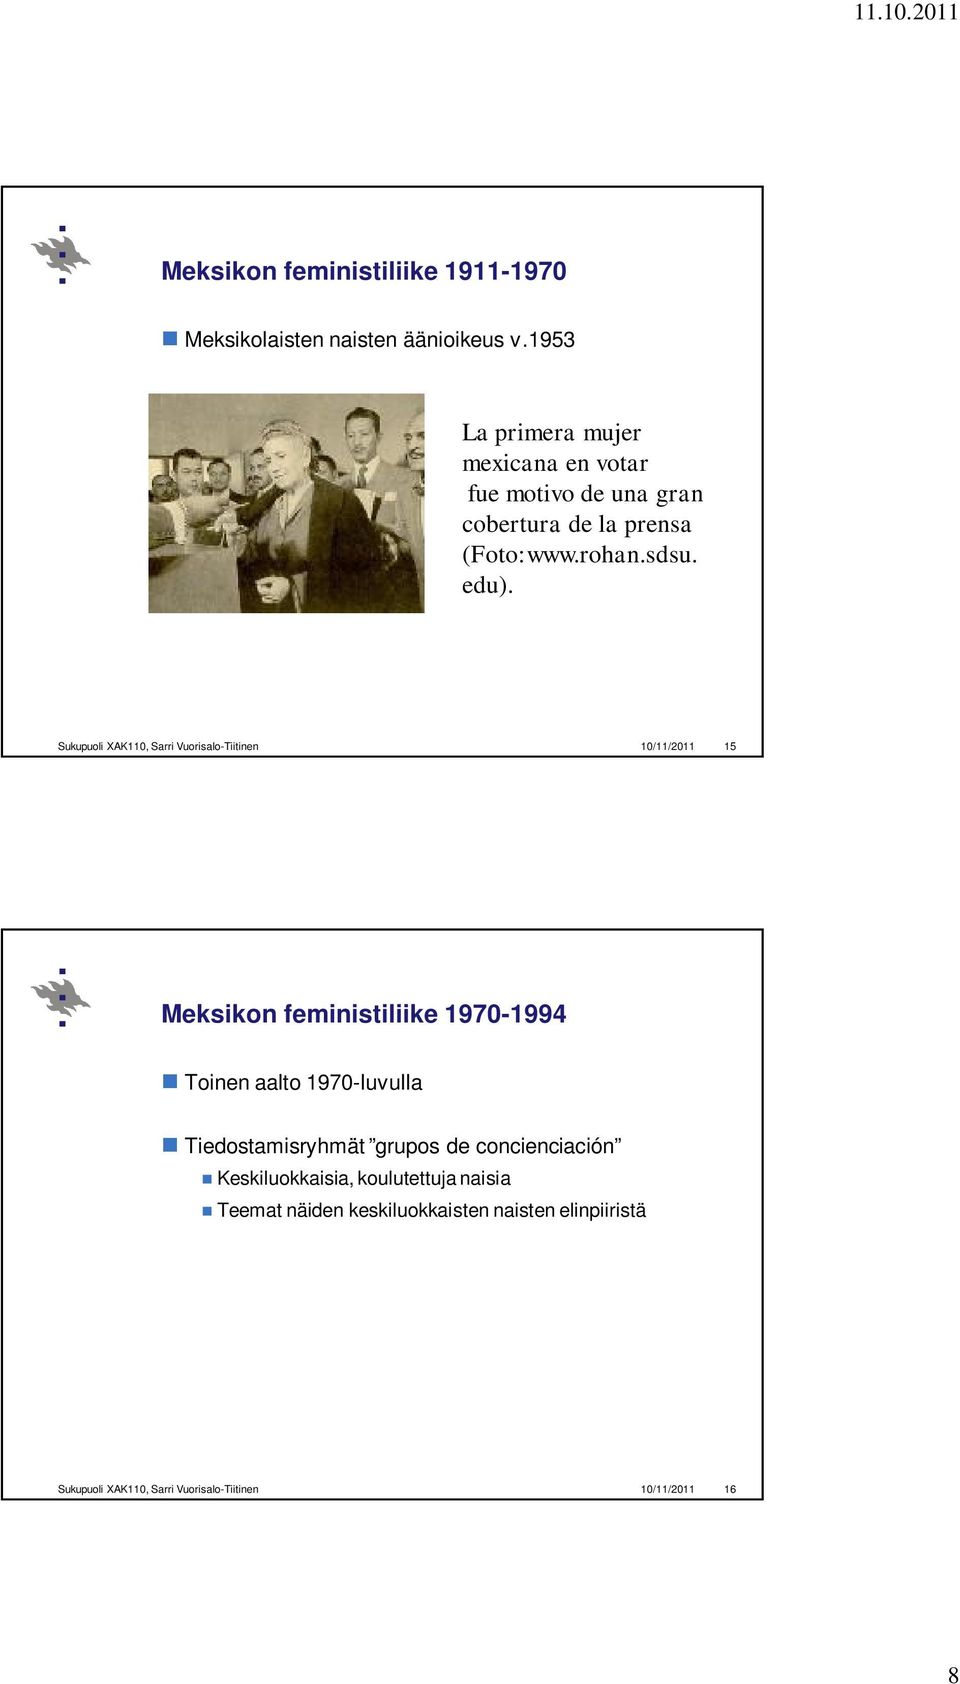 Sukupuoli XAK110, Sarri Vuorisalo-Tiitinen 10/11/2011 15 Meksikon feministiliike 1970-1994 Toinen aalto 1970-luvulla